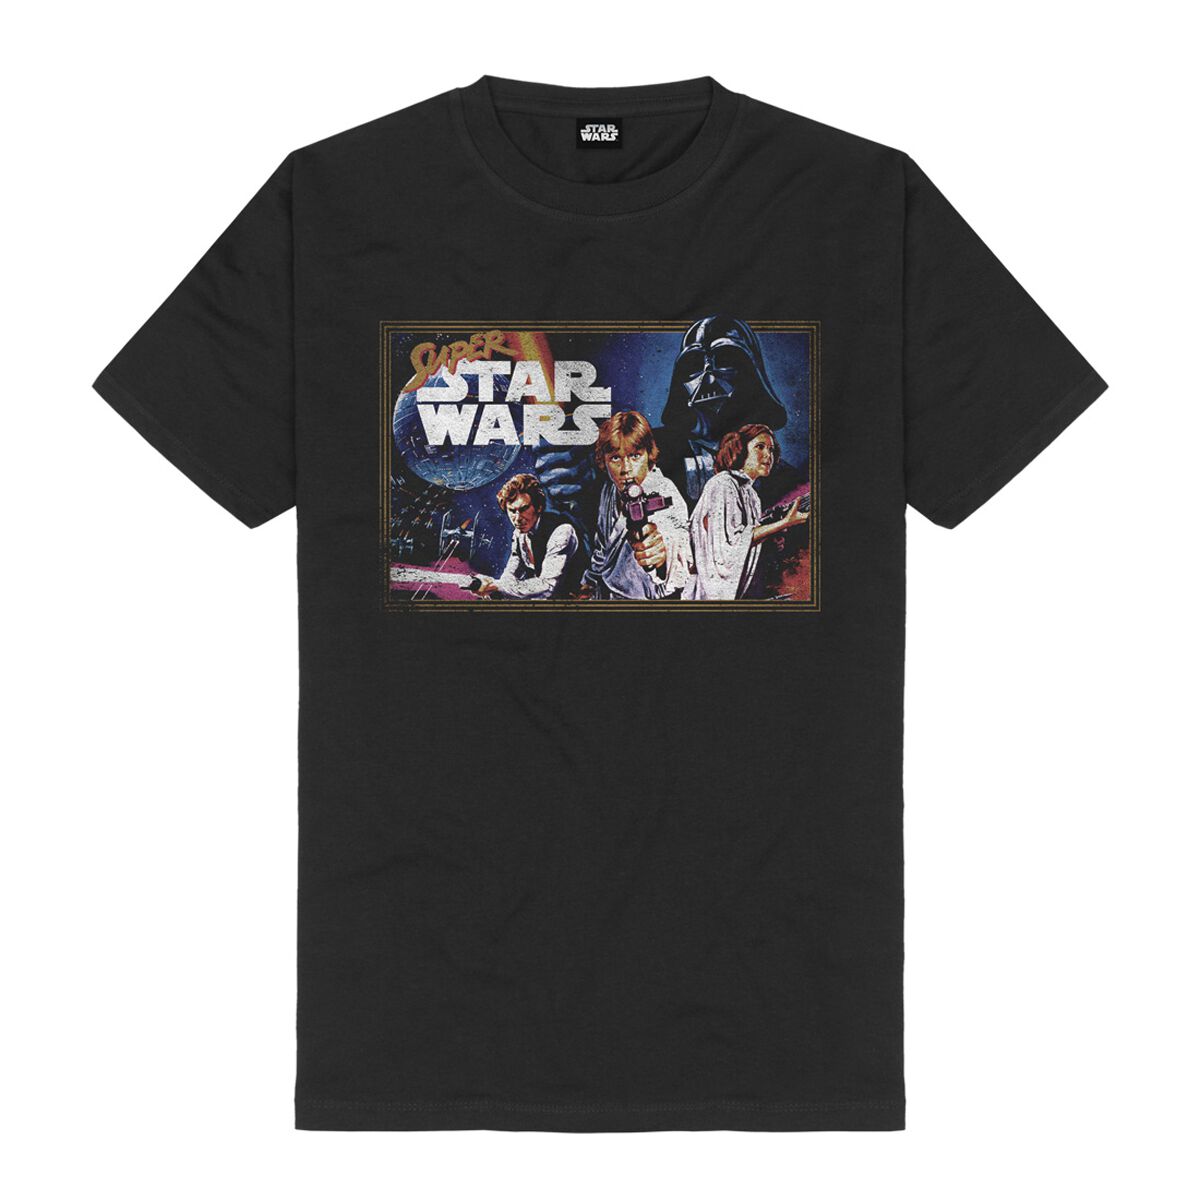 Star Wars T-Shirt - Super Star Wars Game - S bis M - für Männer - Größe M - schwarz  - Lizenzierter Fanartikel